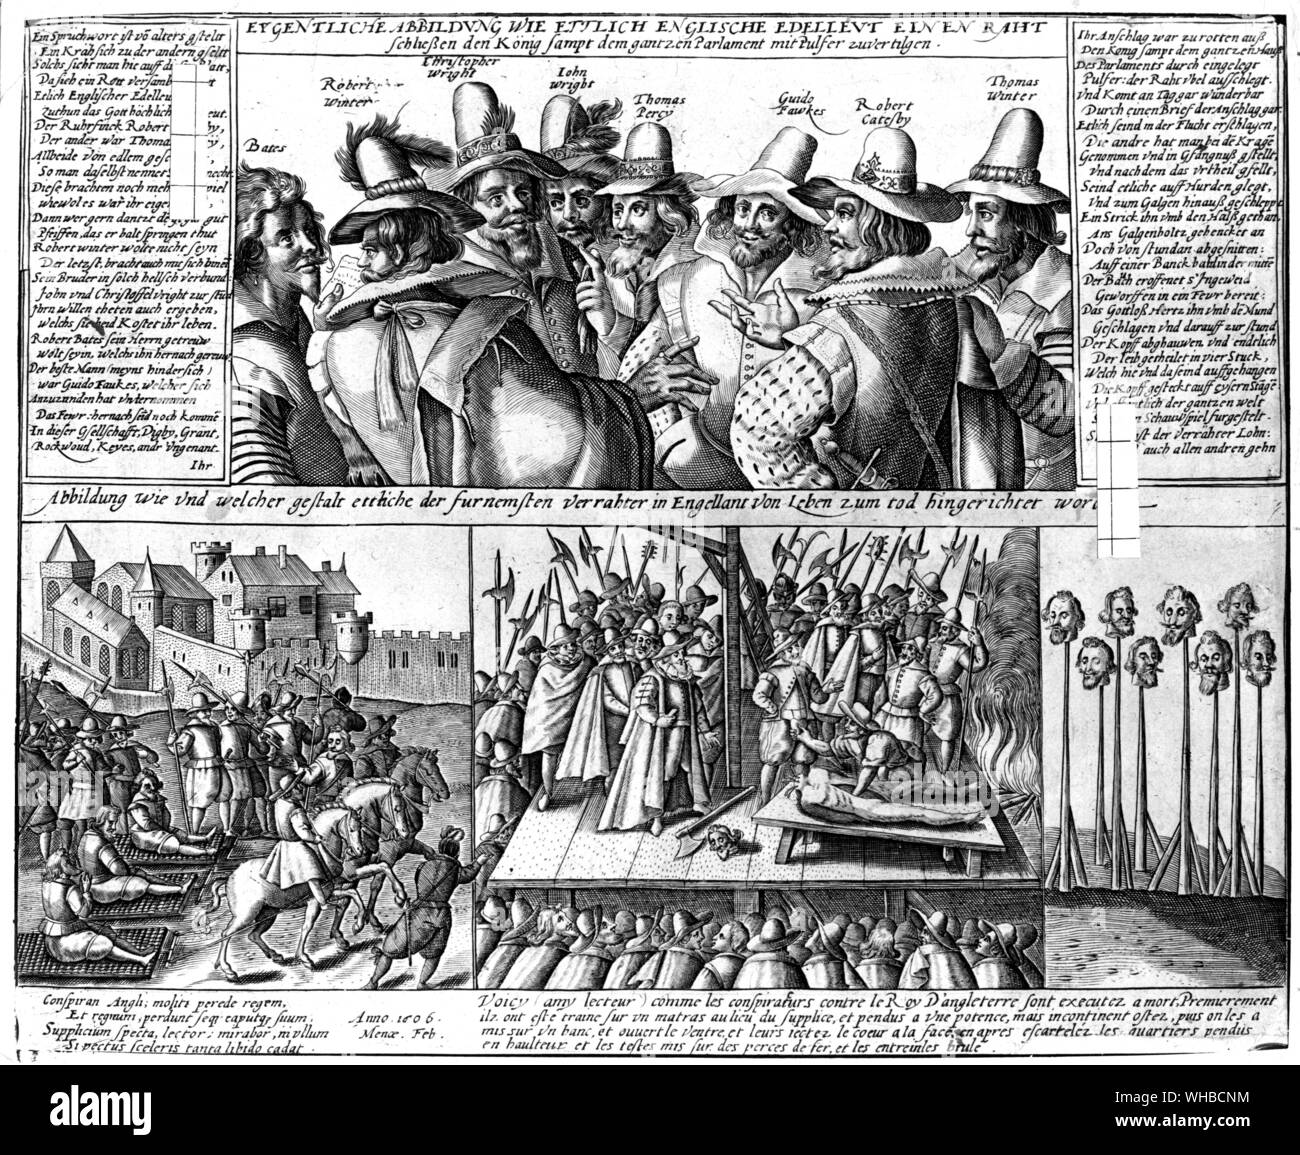 Grabado del siglo XVII : Guy Fawkes y sus compañeros conspiradores fueron activados por su decepción por James's traición de su promesa a tolerar la fe católica . Fawkes y los otros fueron brutalmente ejecutadas Foto de stock